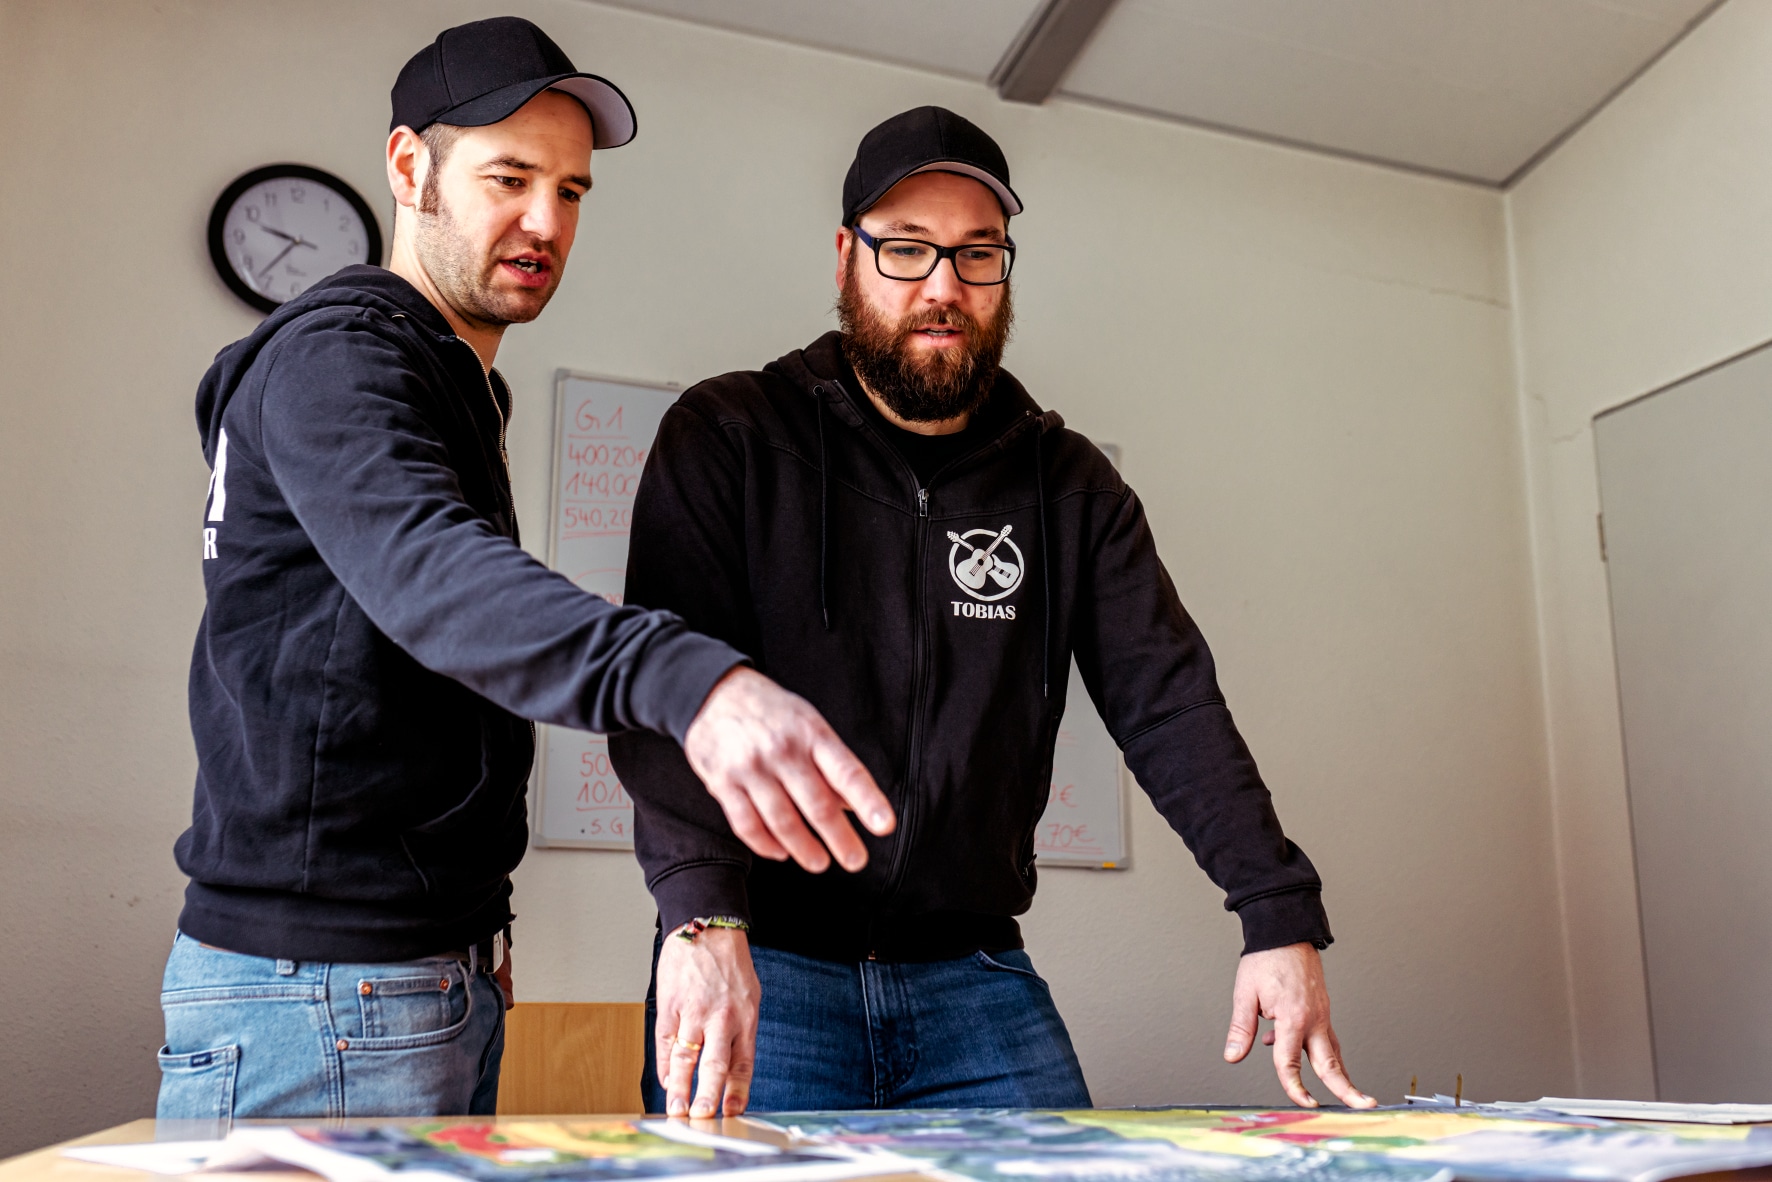 Die Planungen für die kommende Ausgabe des Haste Open Air sind in vollem Gange. Andreas (links) und Tobias Richter brühten noch über den passenden Acts. / Foto: Björn Plantholt | Fotokrat